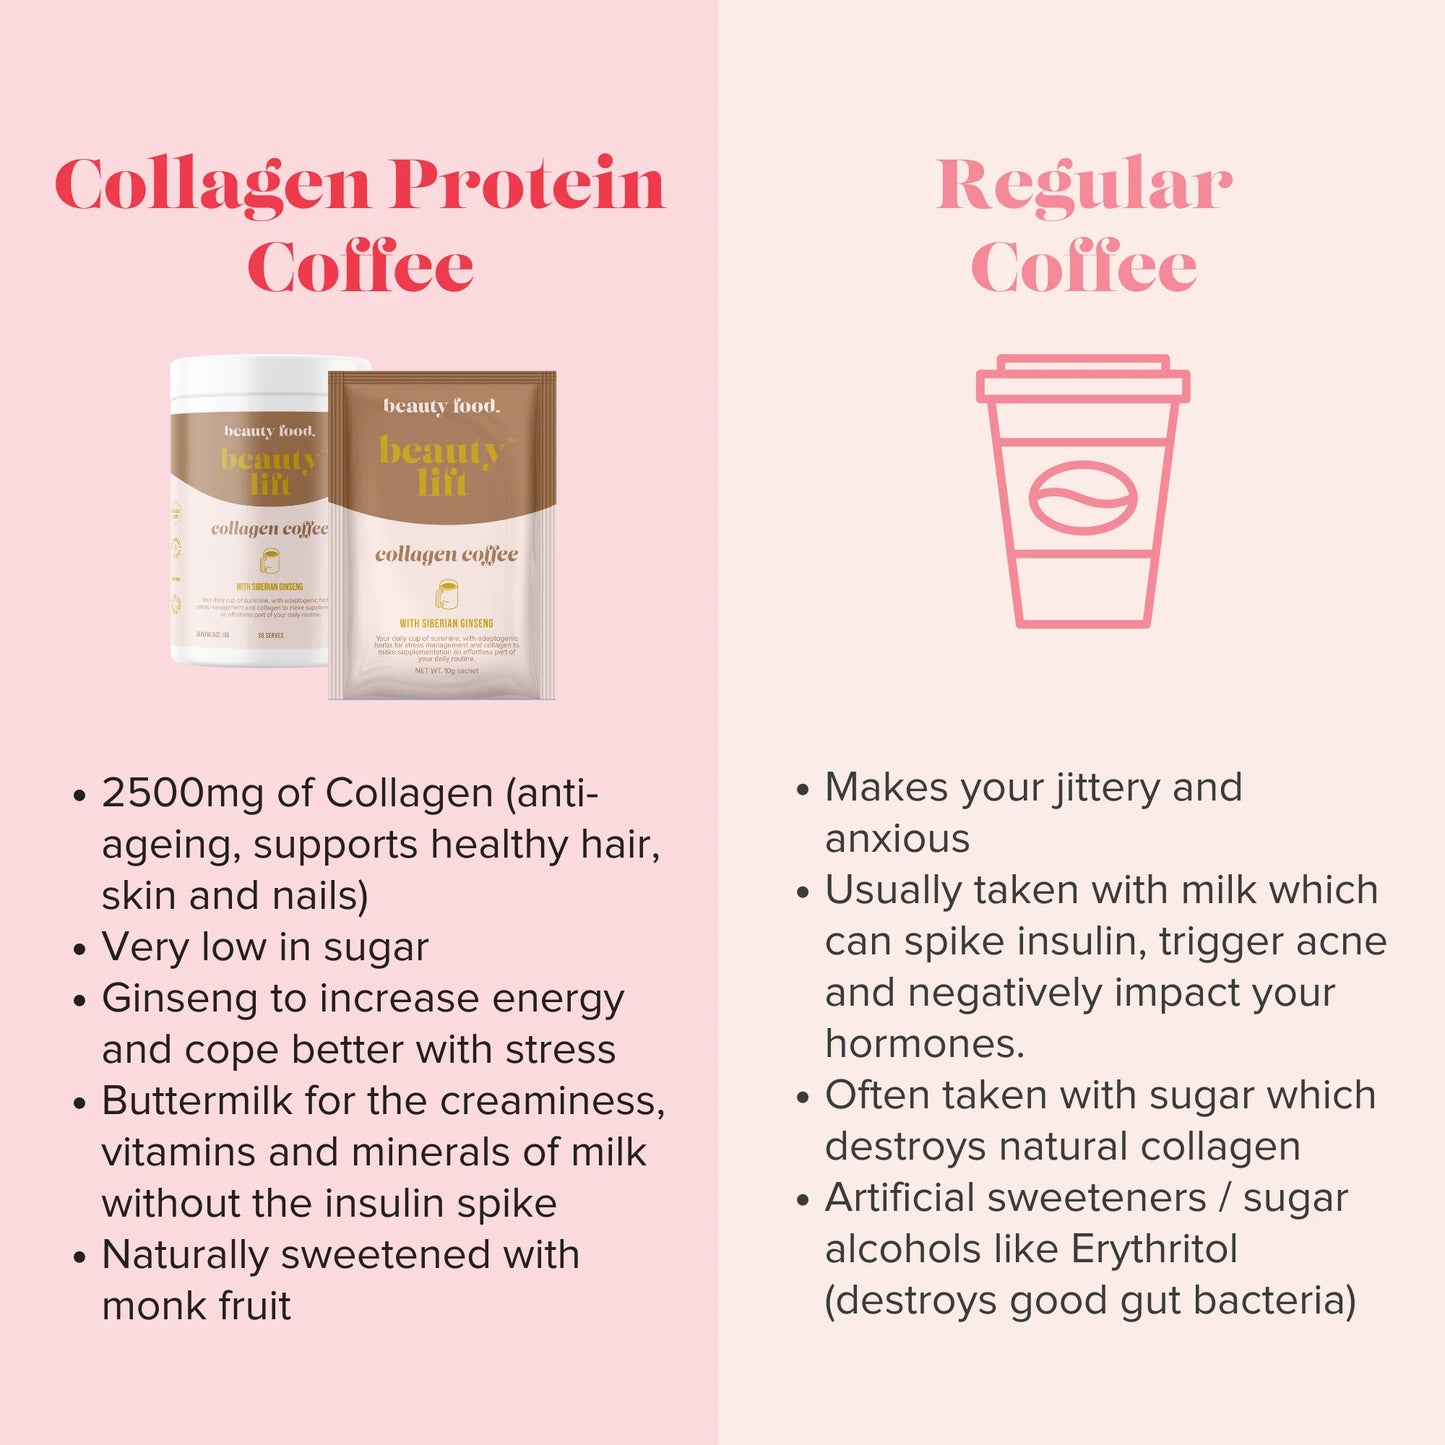 Beauty Food Collagen Coffee